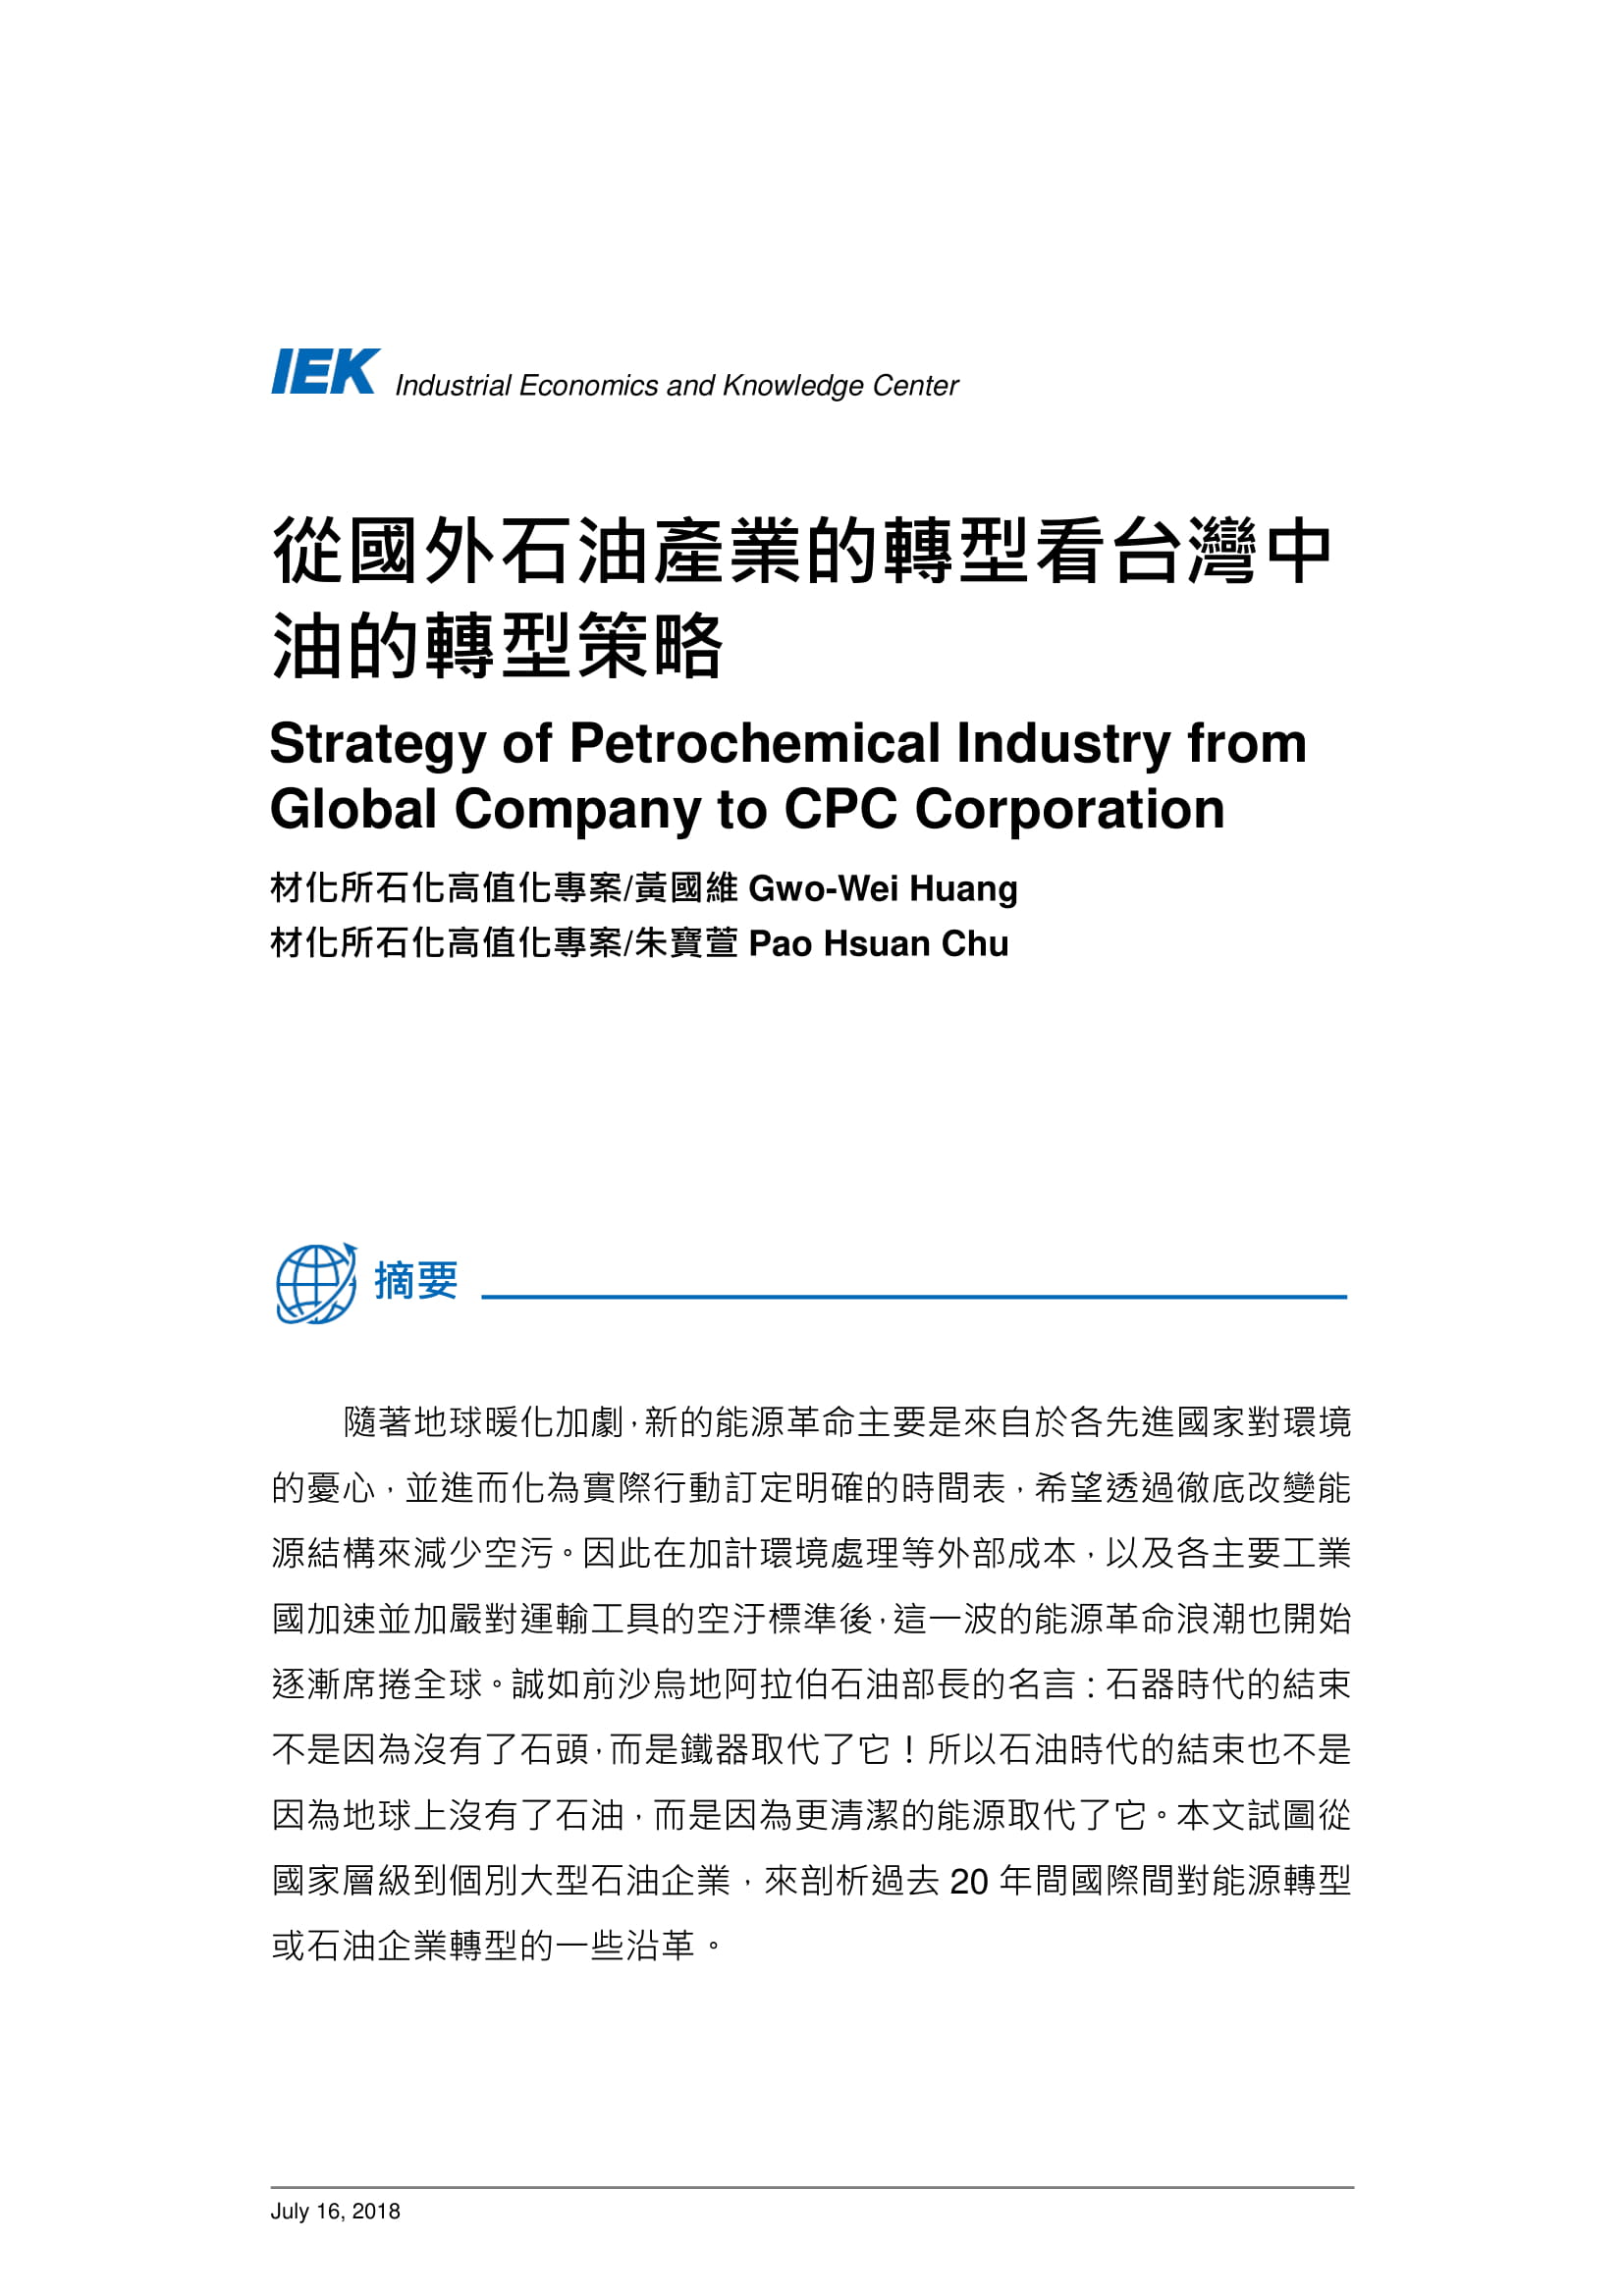 從國外石油產業的轉型看台灣中油的轉型策略_共11頁_第2頁內文(詳如下方附件)